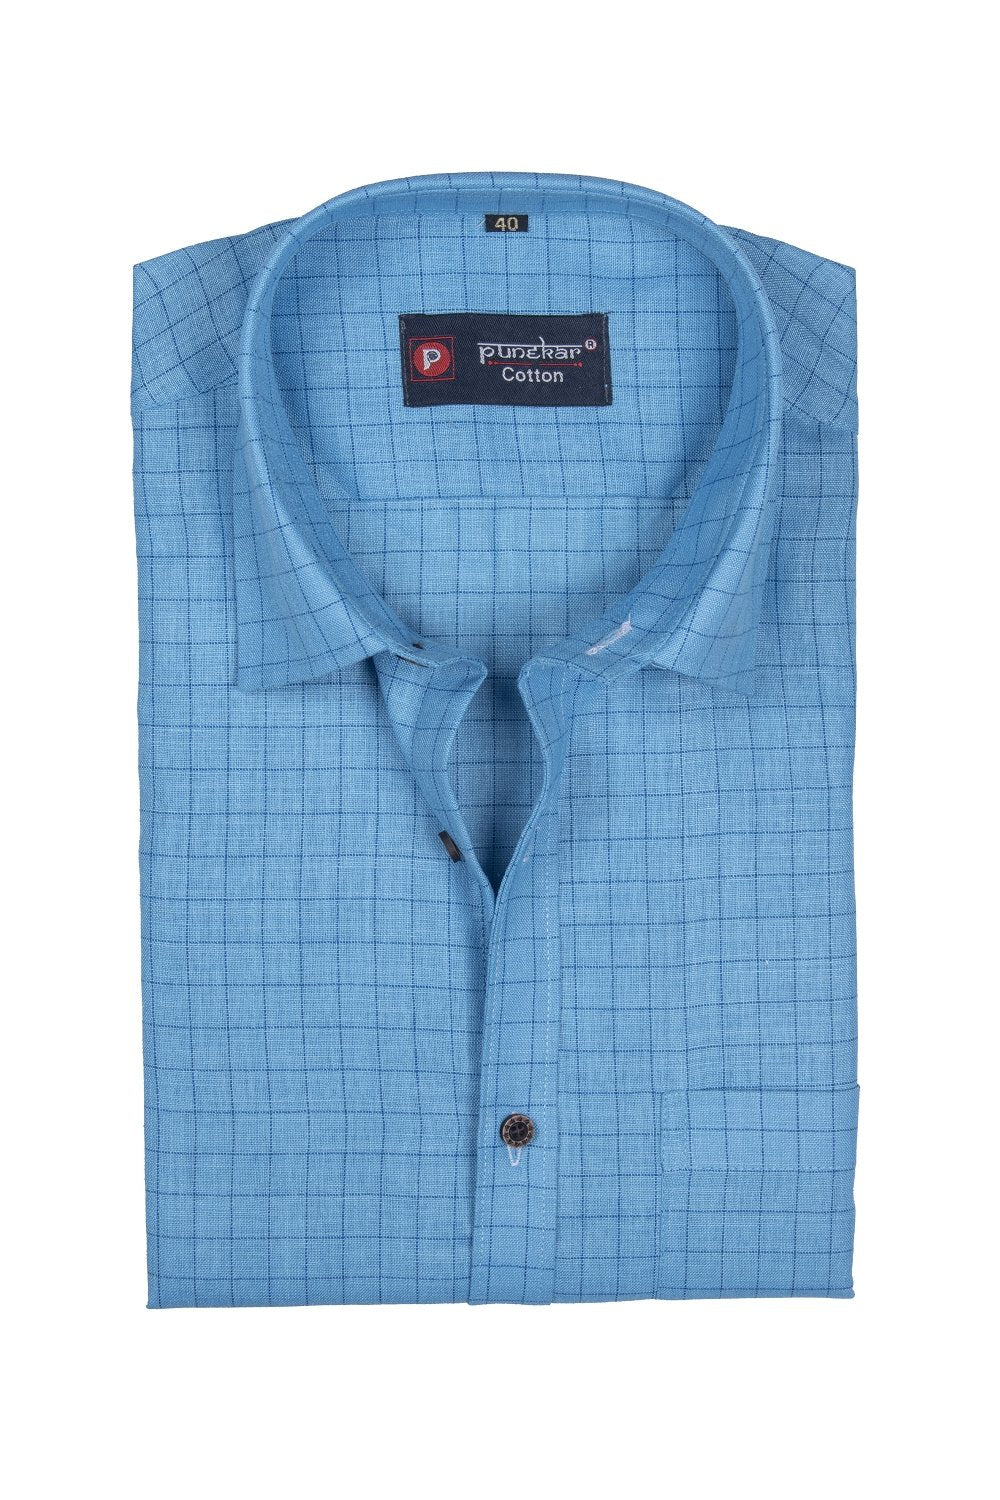 Punekar Cotton Light Blue Color Check Criss Cross Woven Cotton Shirt for Men's. - Punekar Cotton